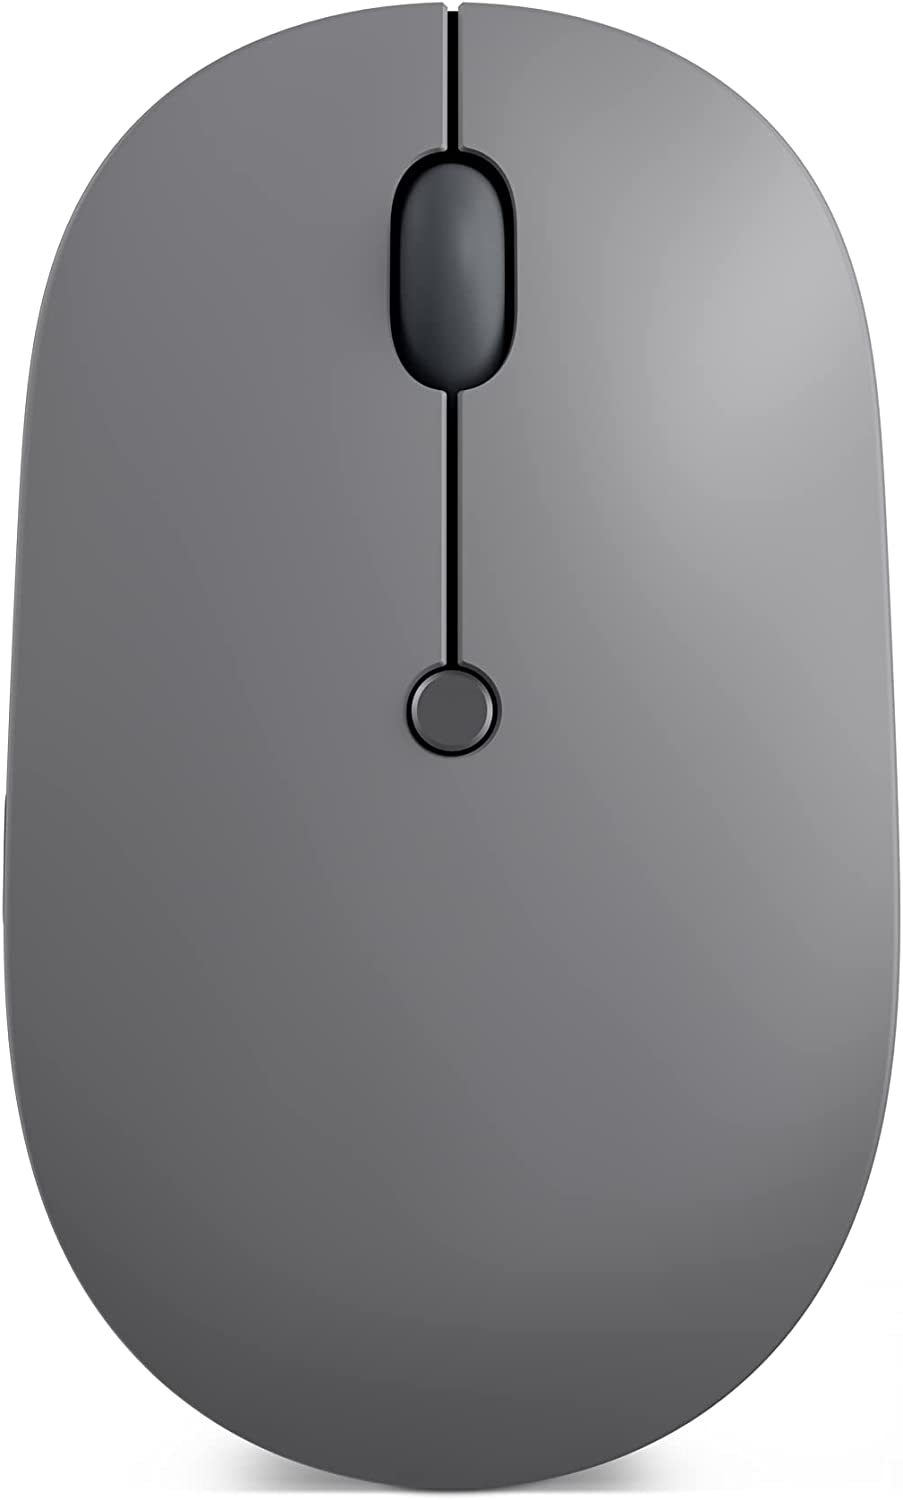 Mới 100% Full Box] Chuột Không Dây Lenovo Go USB-C Essential Wireless Mouse  